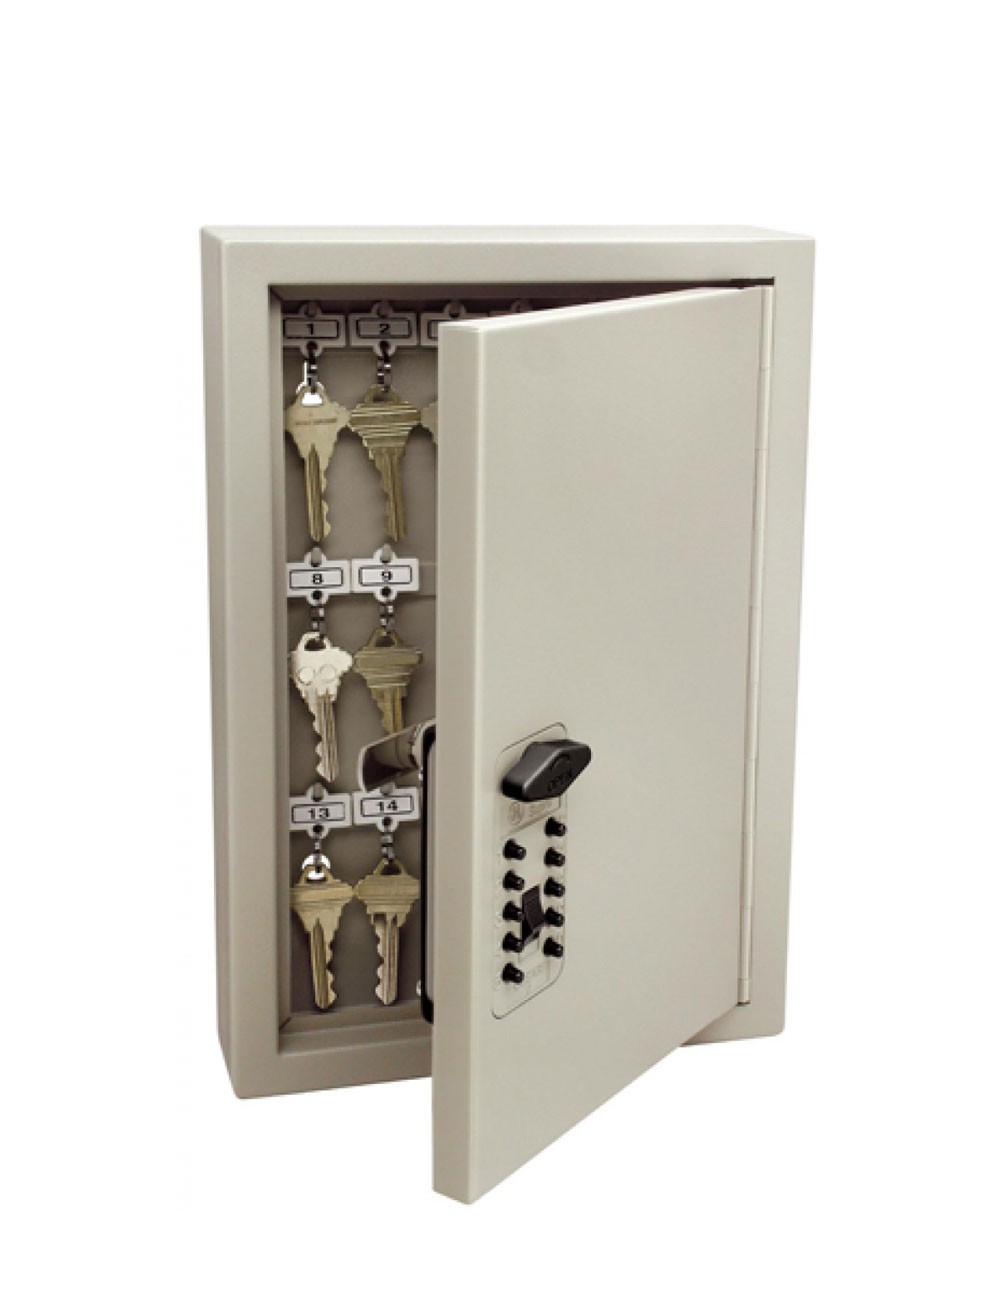 Armoire Keysafe 30 clés à ouverture par code mécanique, ouverte avec des clés suspendues à l'intérieur